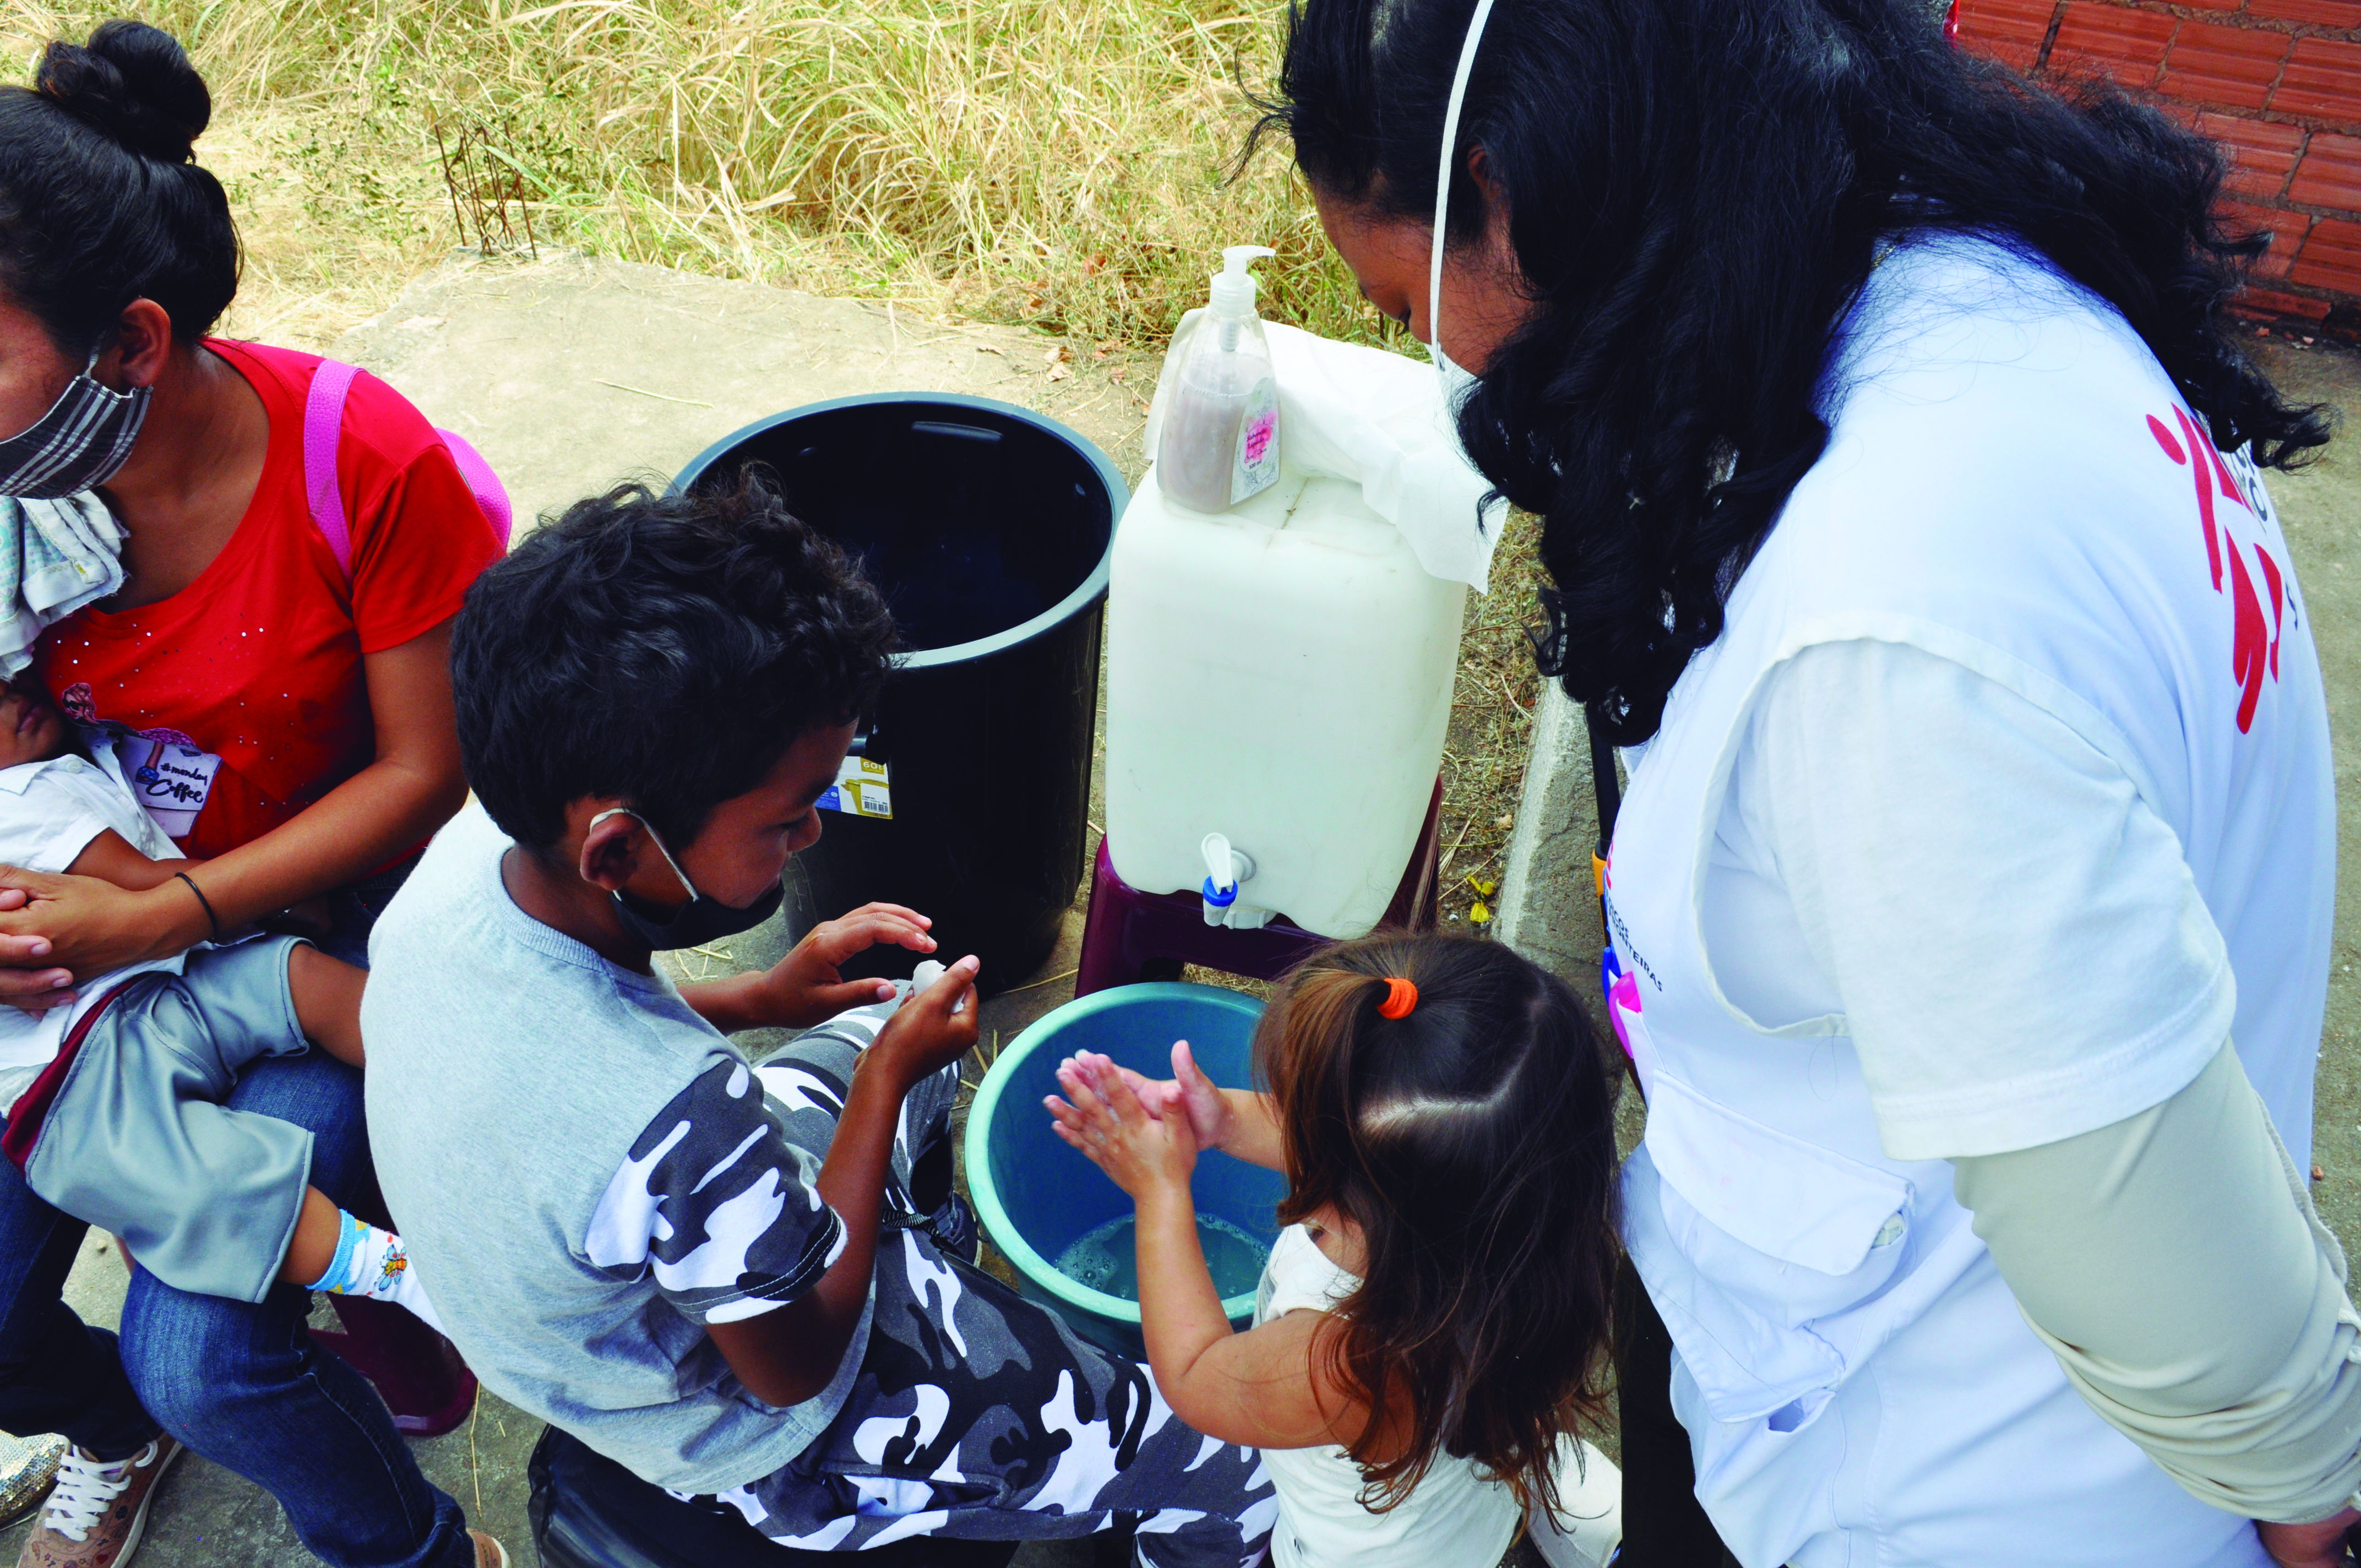 Los equipos de MSF en el estado de Roraima evalúan las necesidades de salud de la población migrante venezolana en São Bento, uno de los distritos de Boa Vista, la capital del estado. Foto: Deivy Abreu / MSF